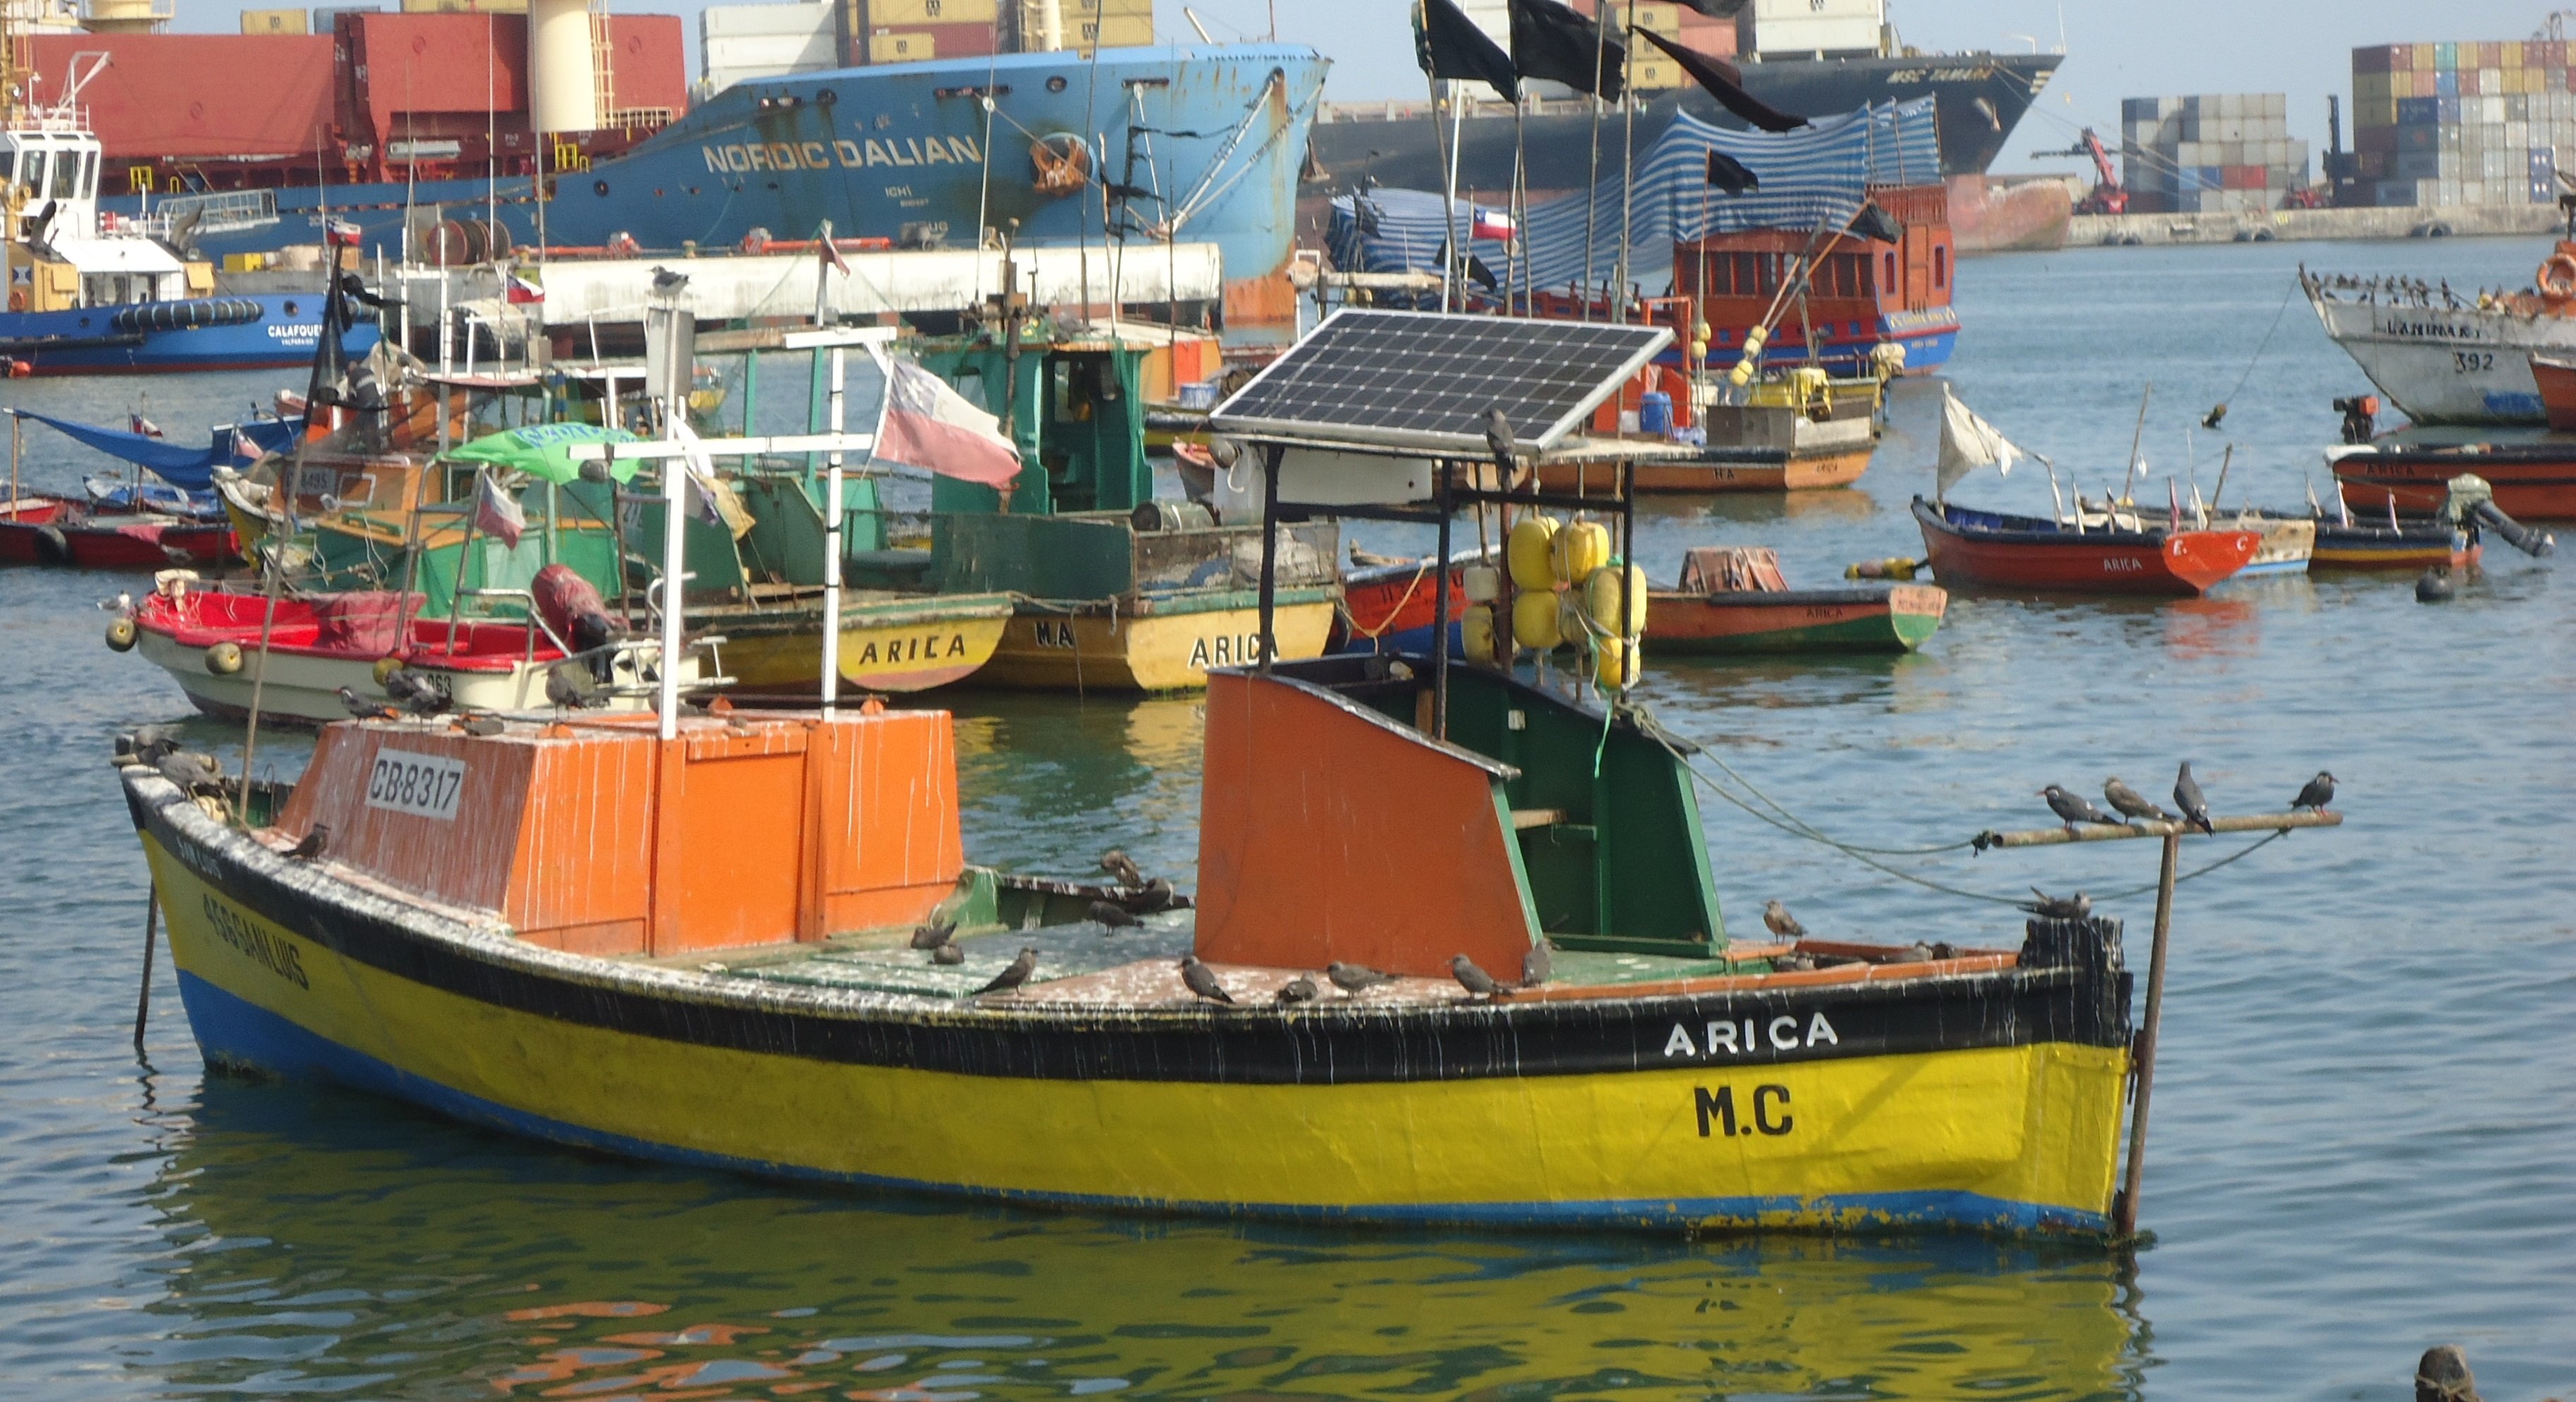 Pescadores artesanales usan paneles solares para mayor seguridad en alta mar